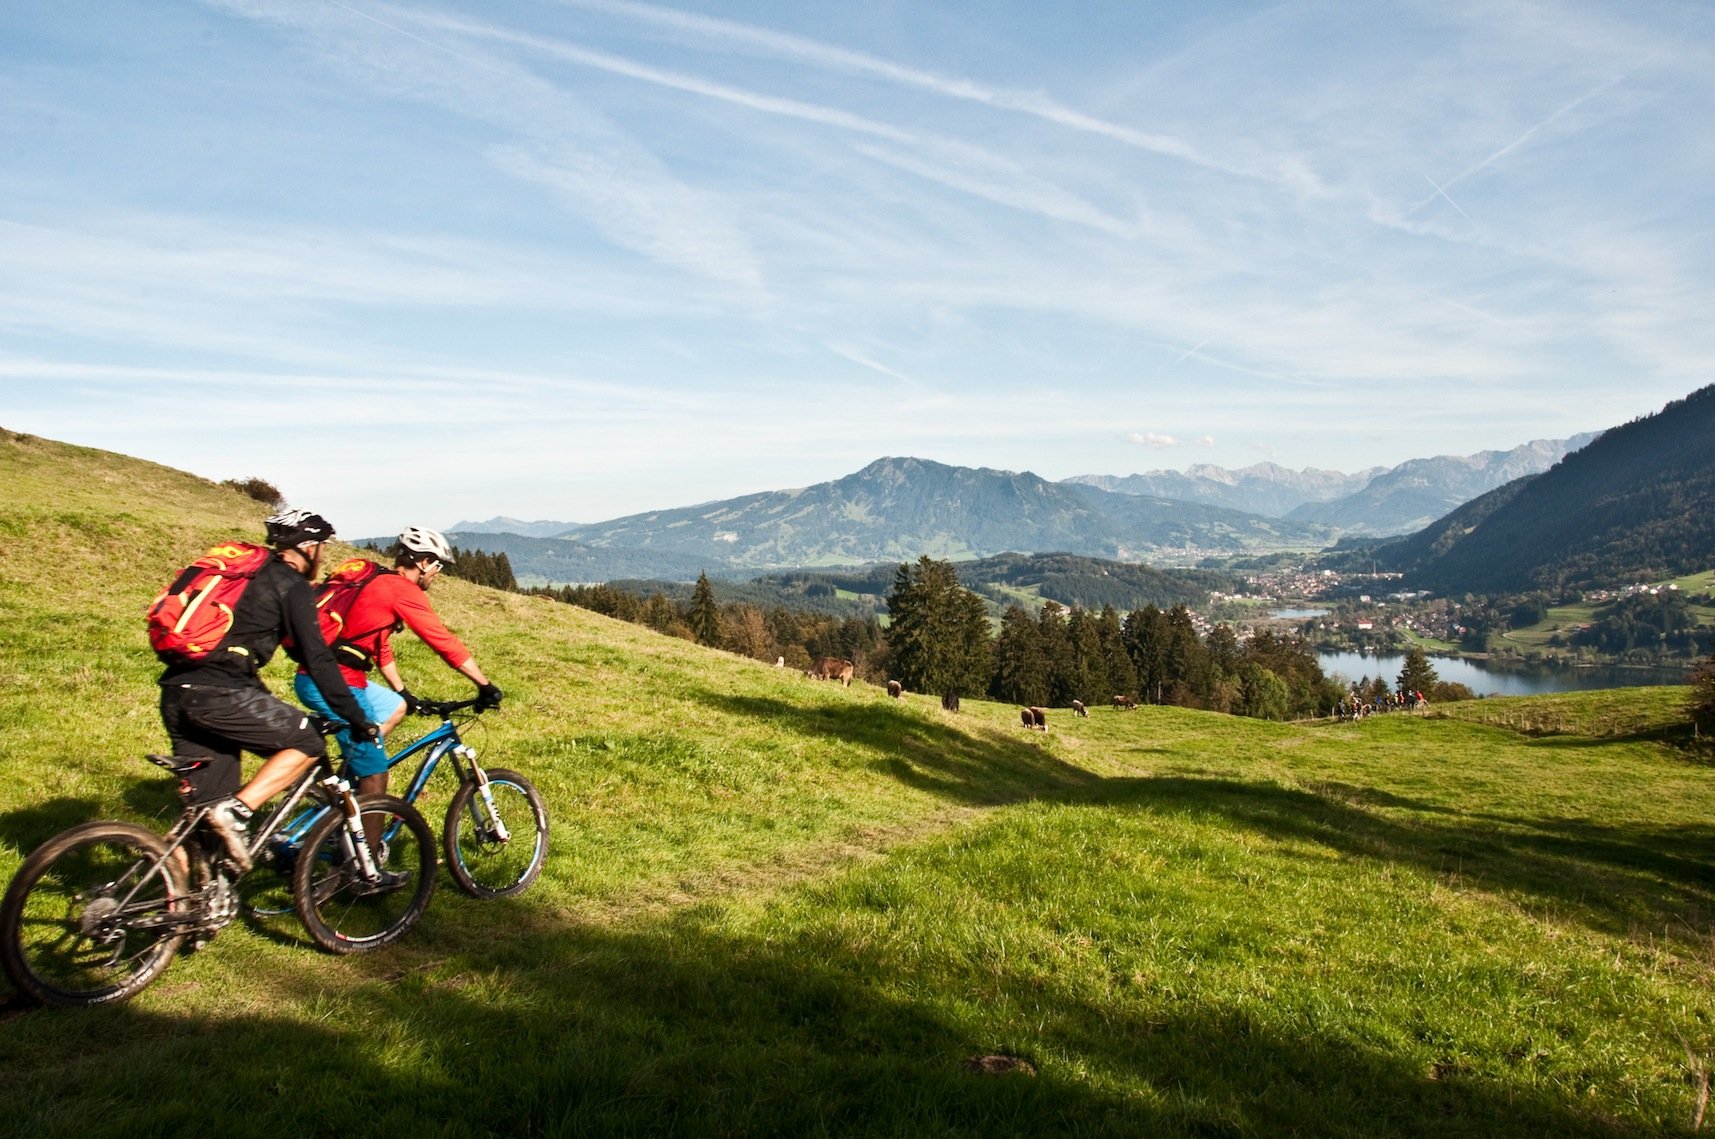 News – Deutscher Alpenverein e.V.: Positionspapier „Mountainbiken“ – DAV wirbt für Rücksichtnahme und Toleranz